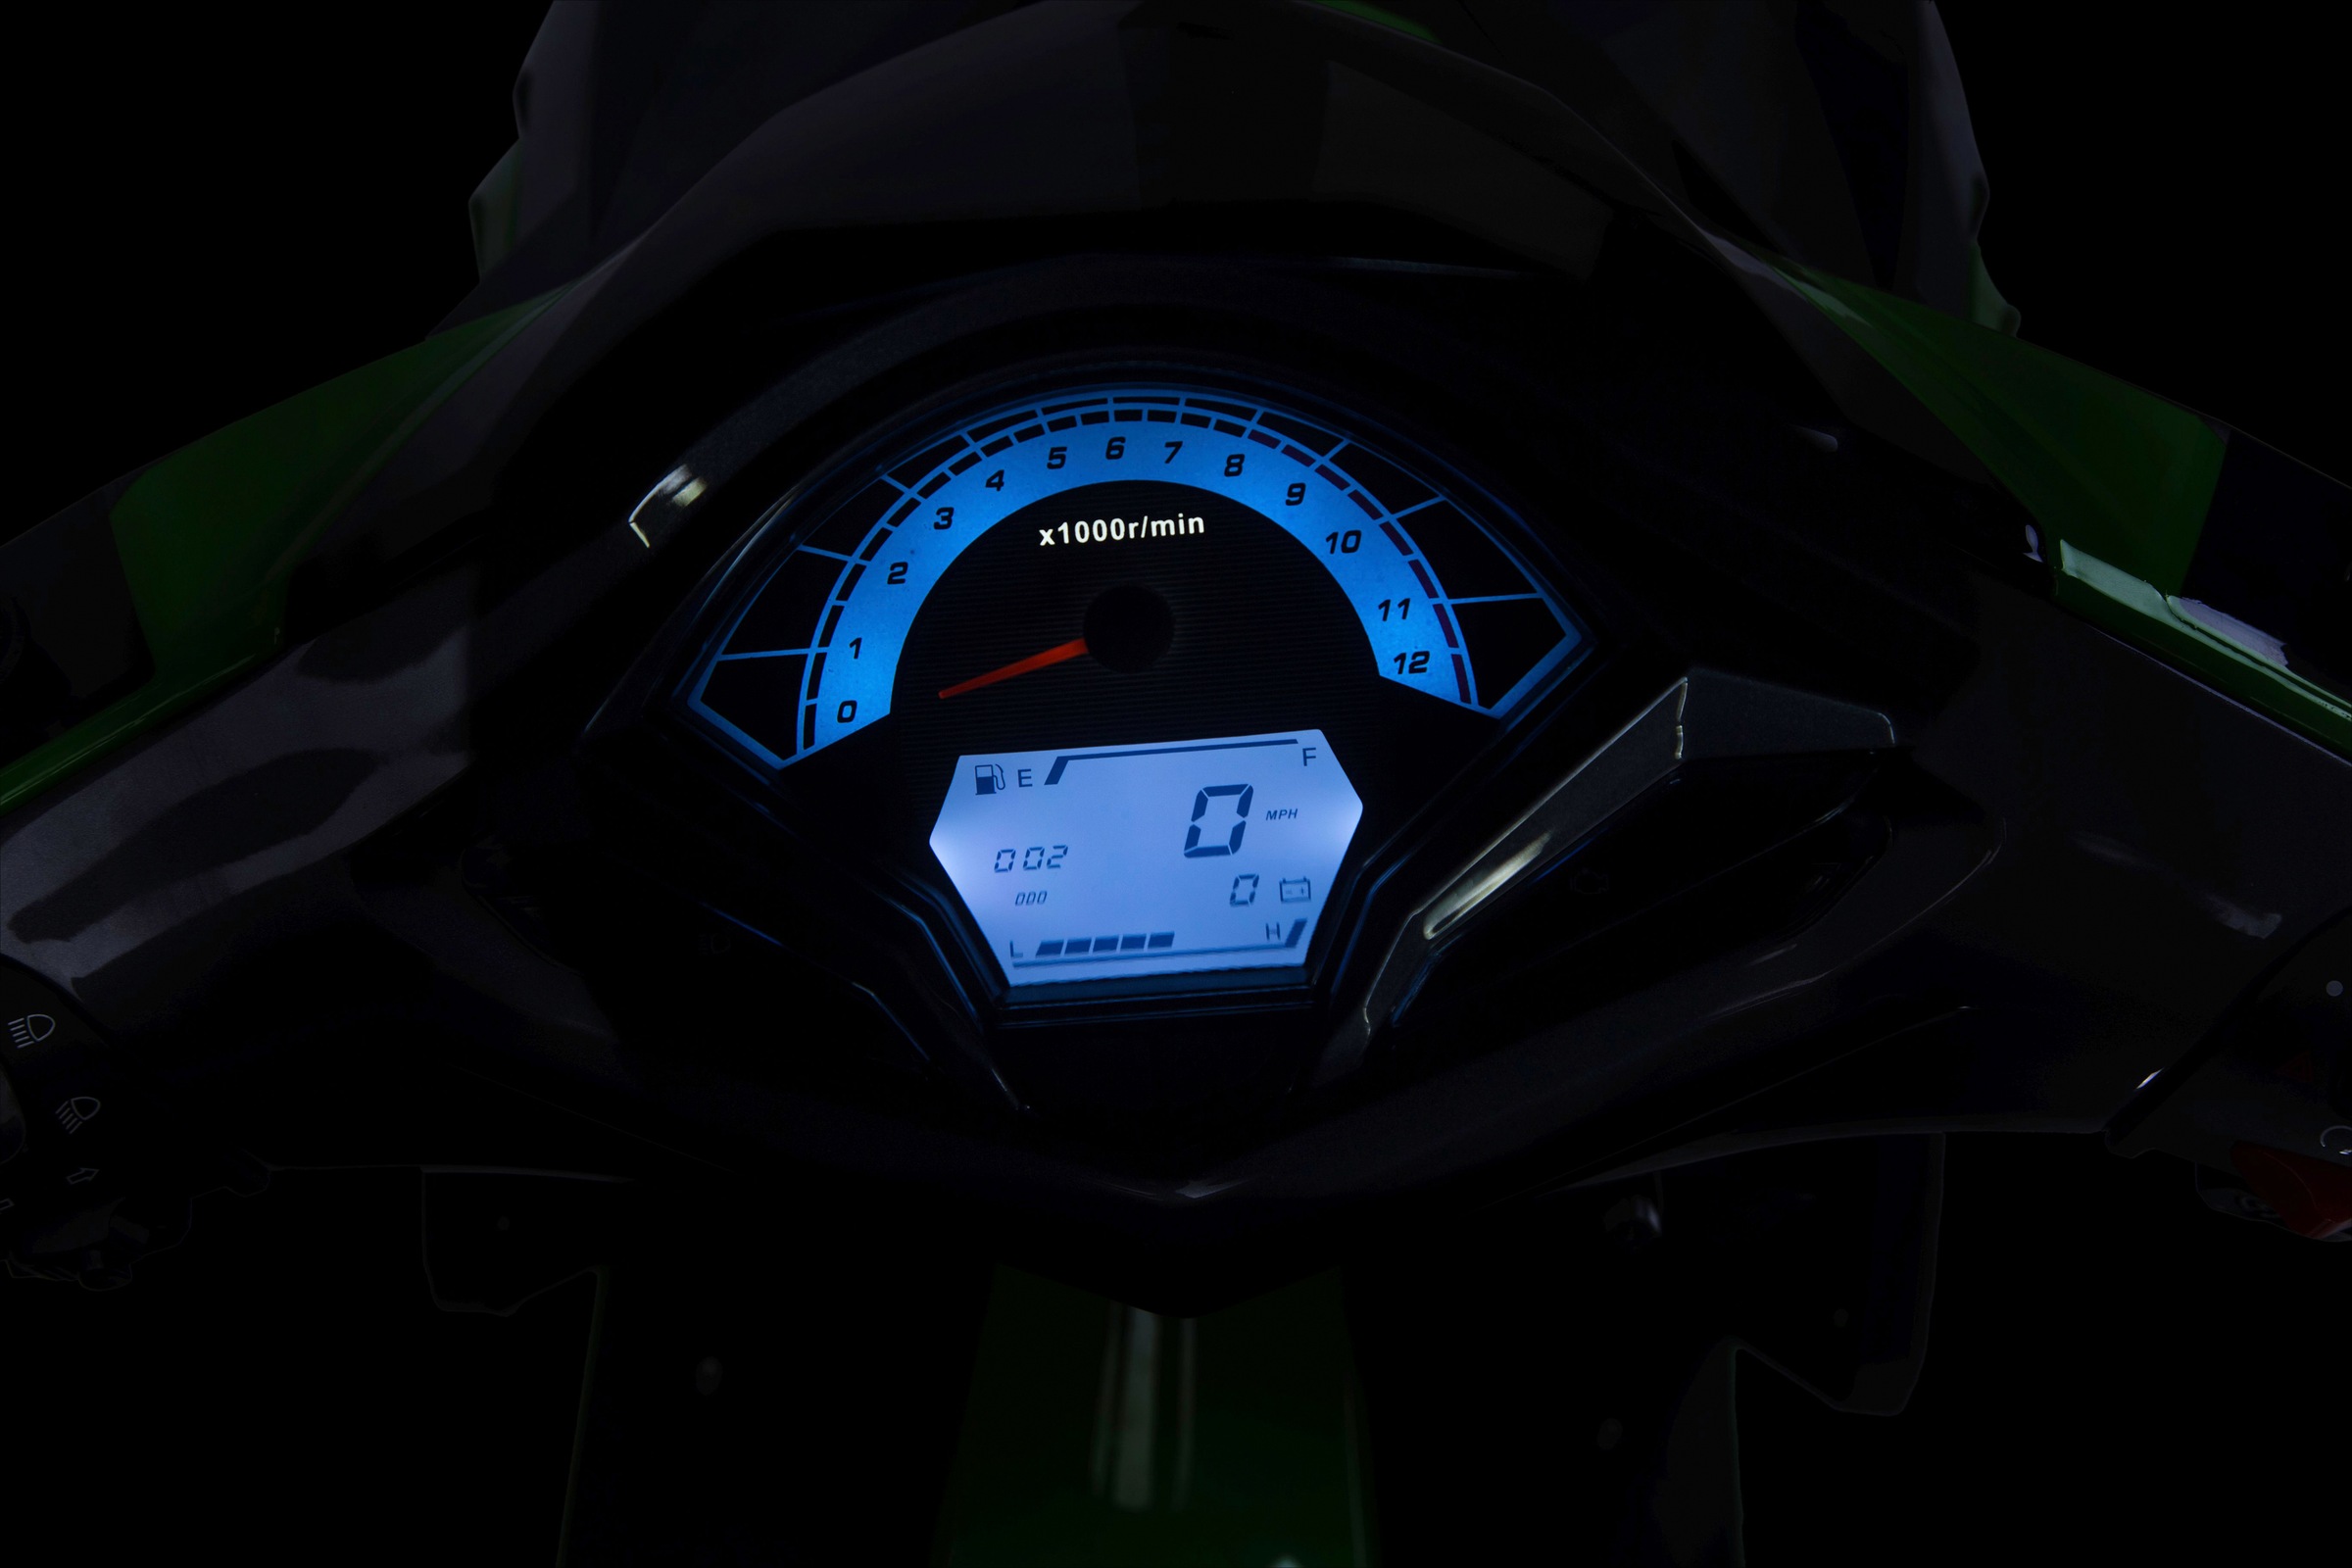 GT UNION Motorroller »Striker«, 50 cm³, 45 km/h, Euro 5, 3 PS online bei